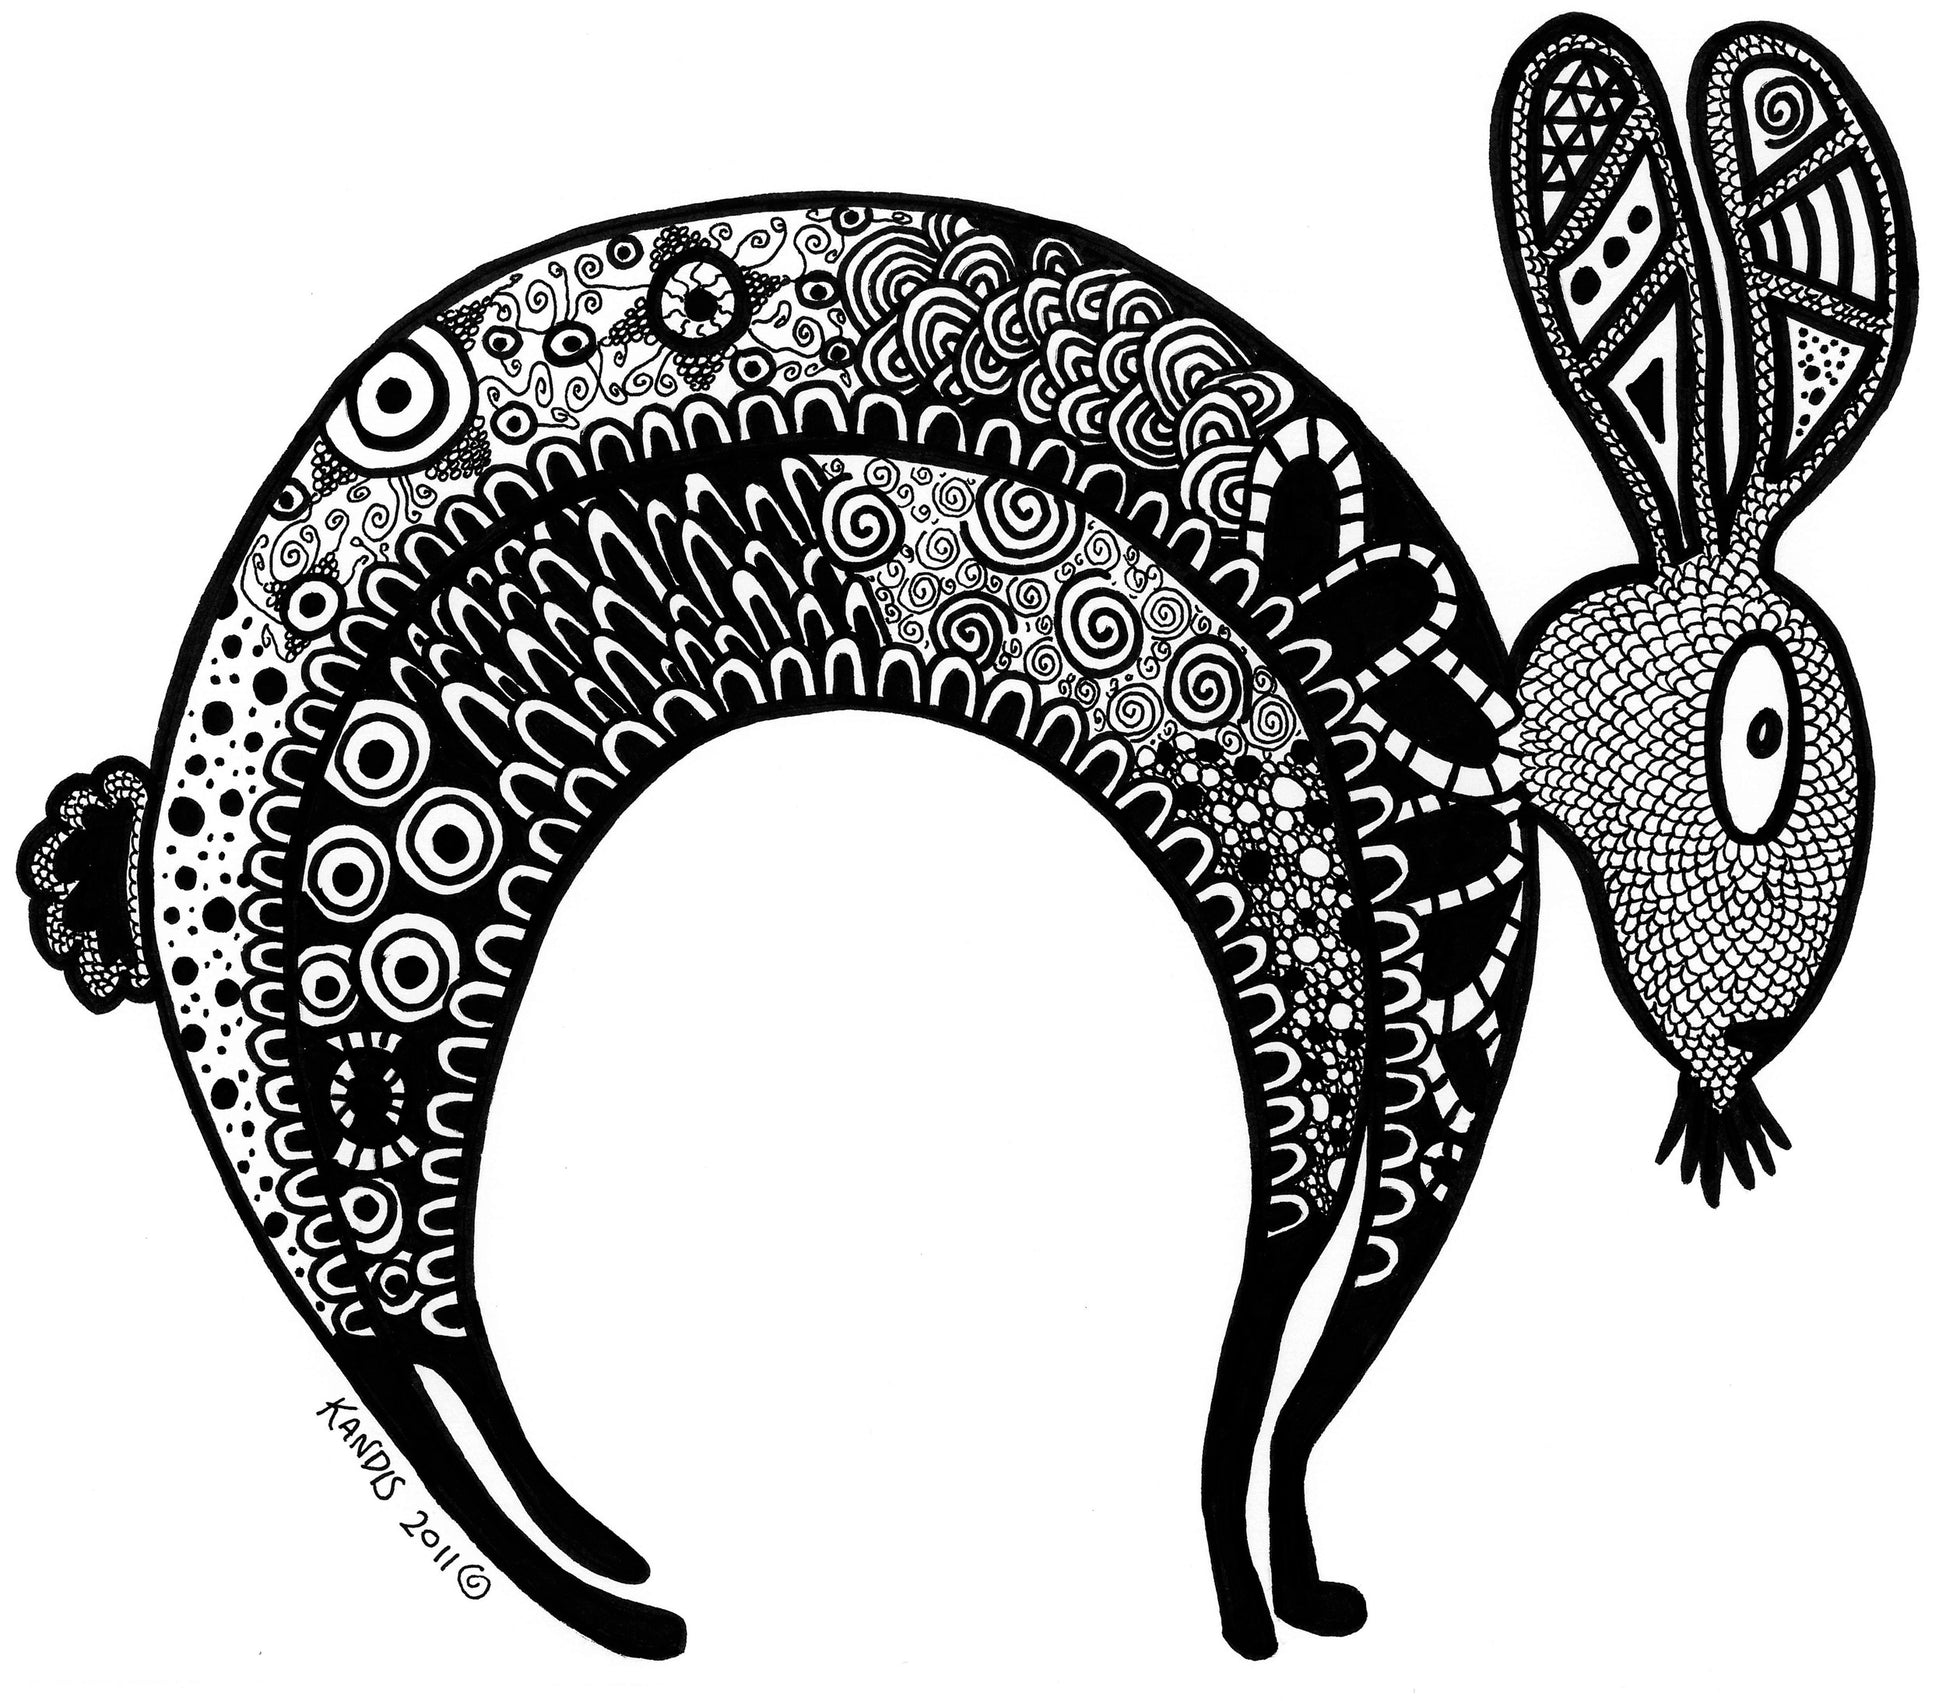 Rabbit line art sticker, zentagle, sticker, black and white sticker